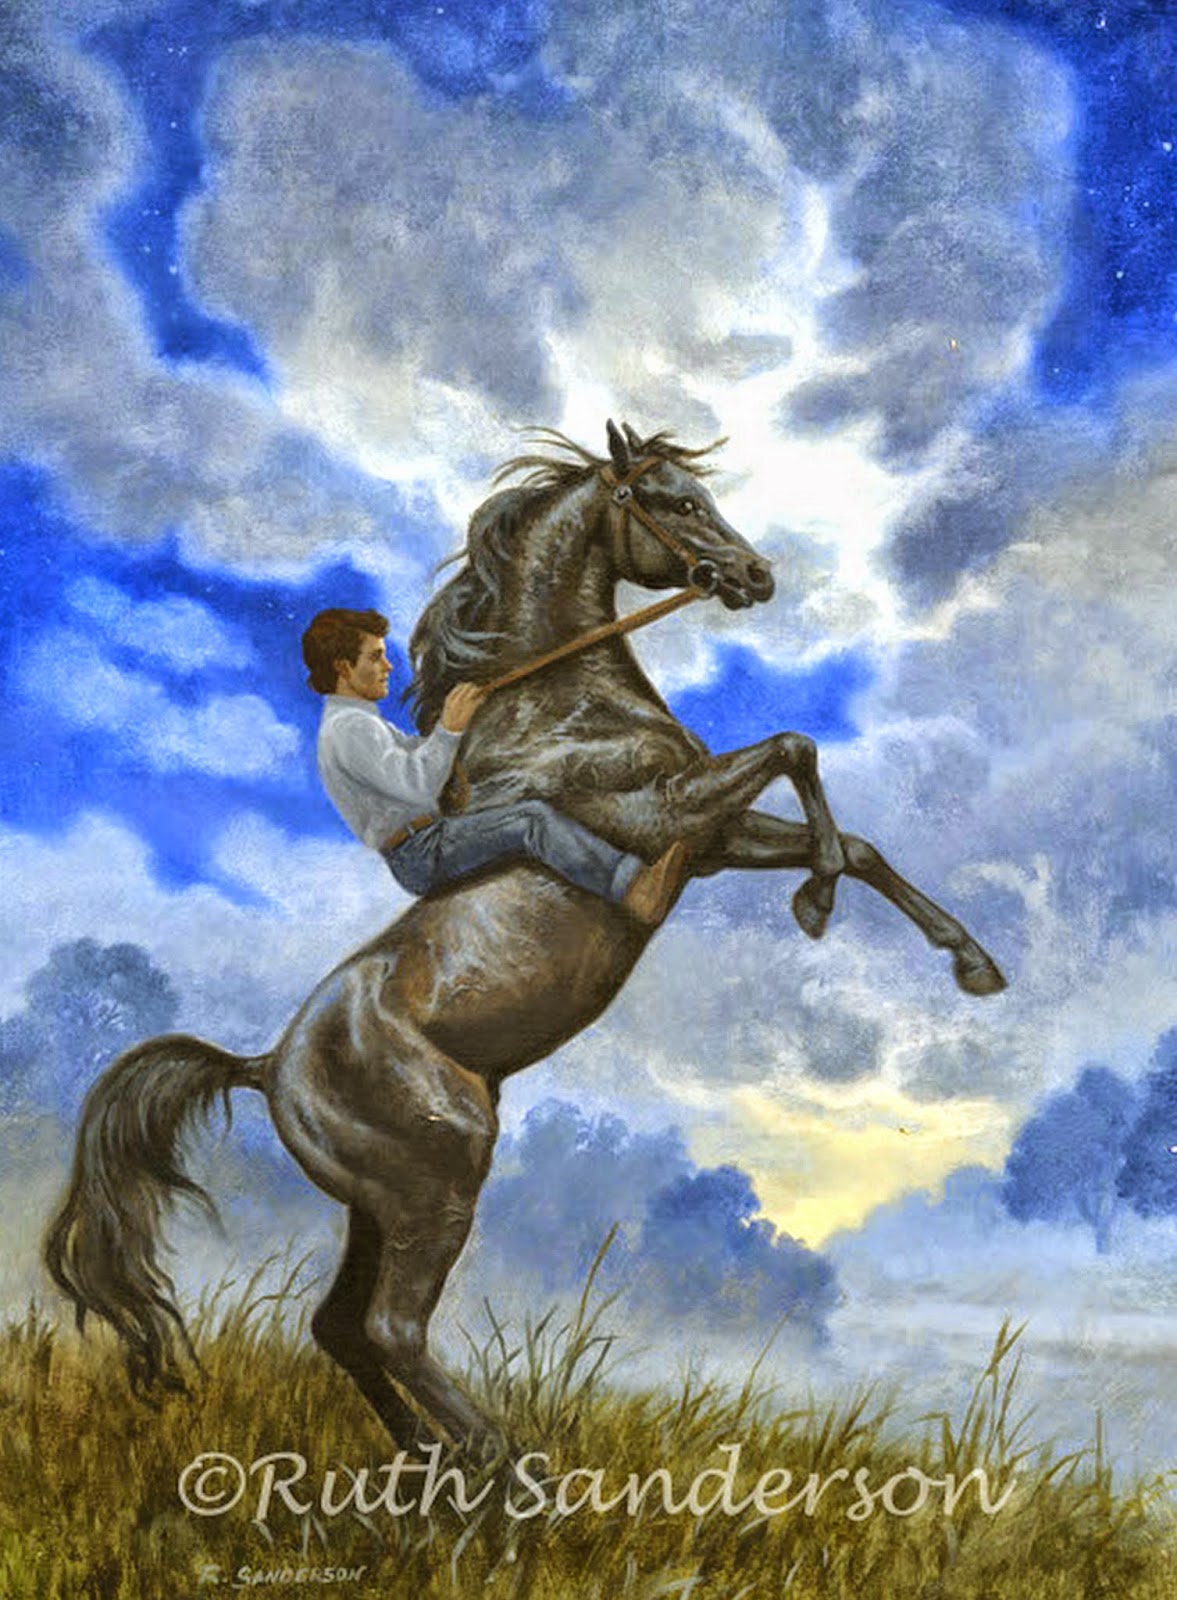 Лихой наездник. Ruth Sanderson лошади. Всадник на коне. Всадник с лошадью. Конь и всадник.